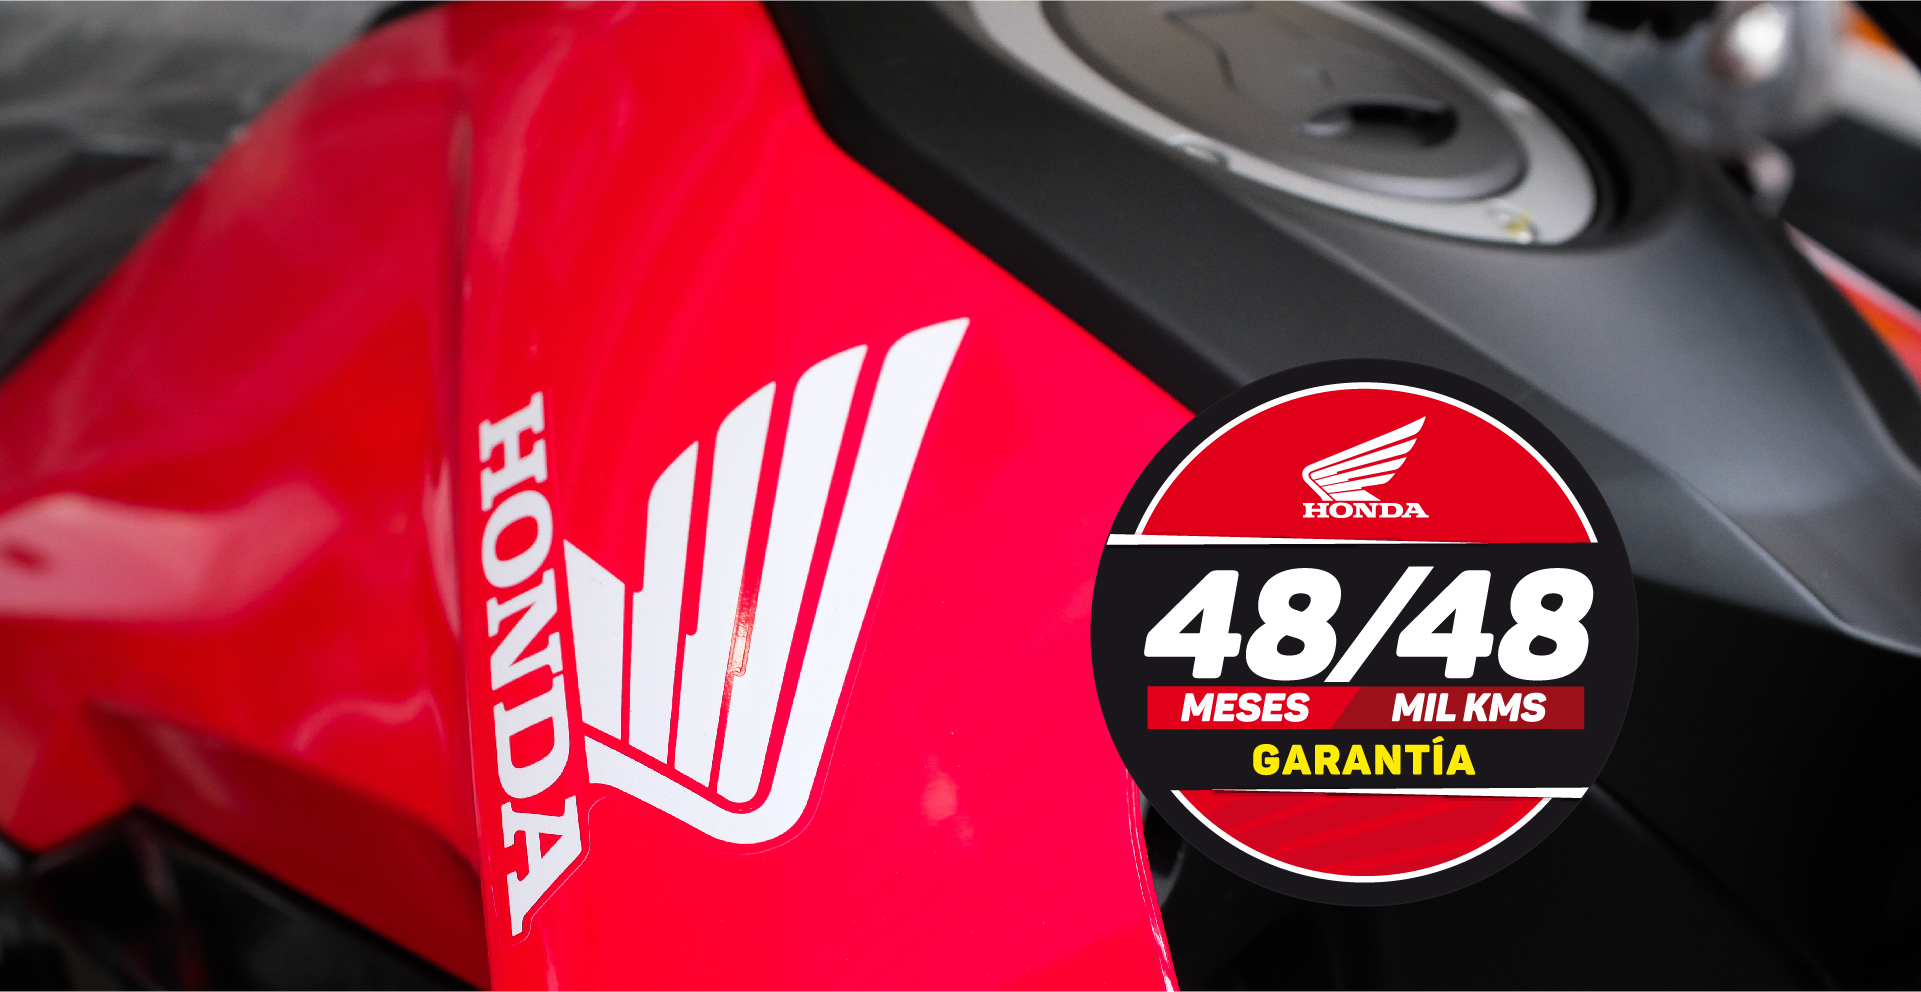 Honda Ecuador - ☑️ Recuerda que #NoVasSolo ➡️ Este mes ¡GRATIS con todas  nuestras motocicletas! ¡Pide tu #Campana #Guardián #Honda! #Cuidate, HONDA  #ViveDeVerdad